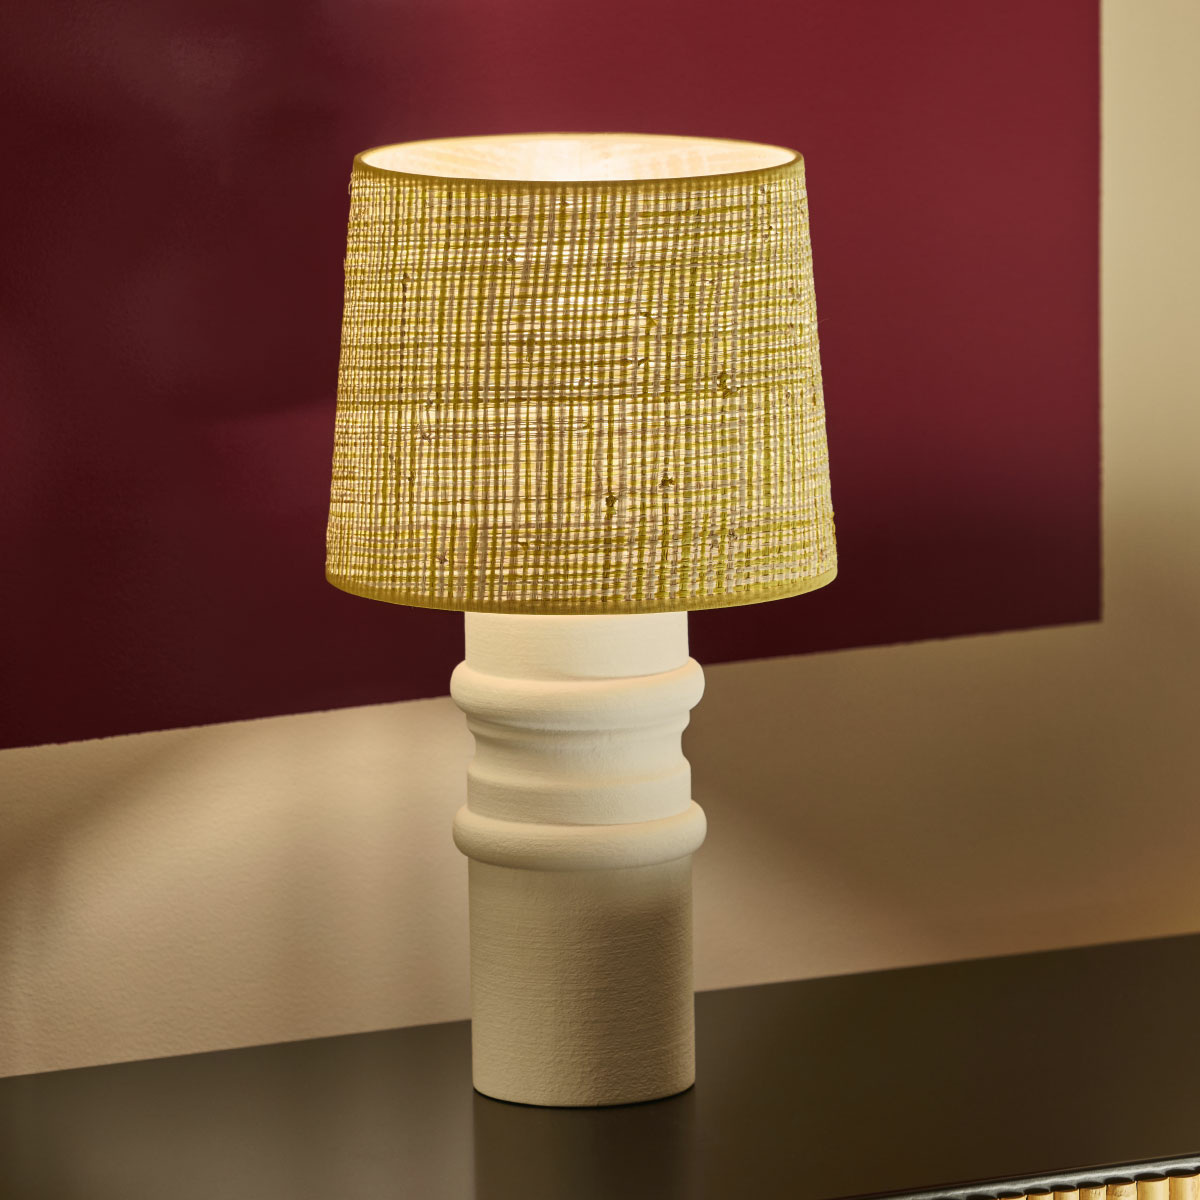 Aquarius Table lamp, Amarillo - H41x ø23 cm - Ceramic / Cotton lampshade - image 3